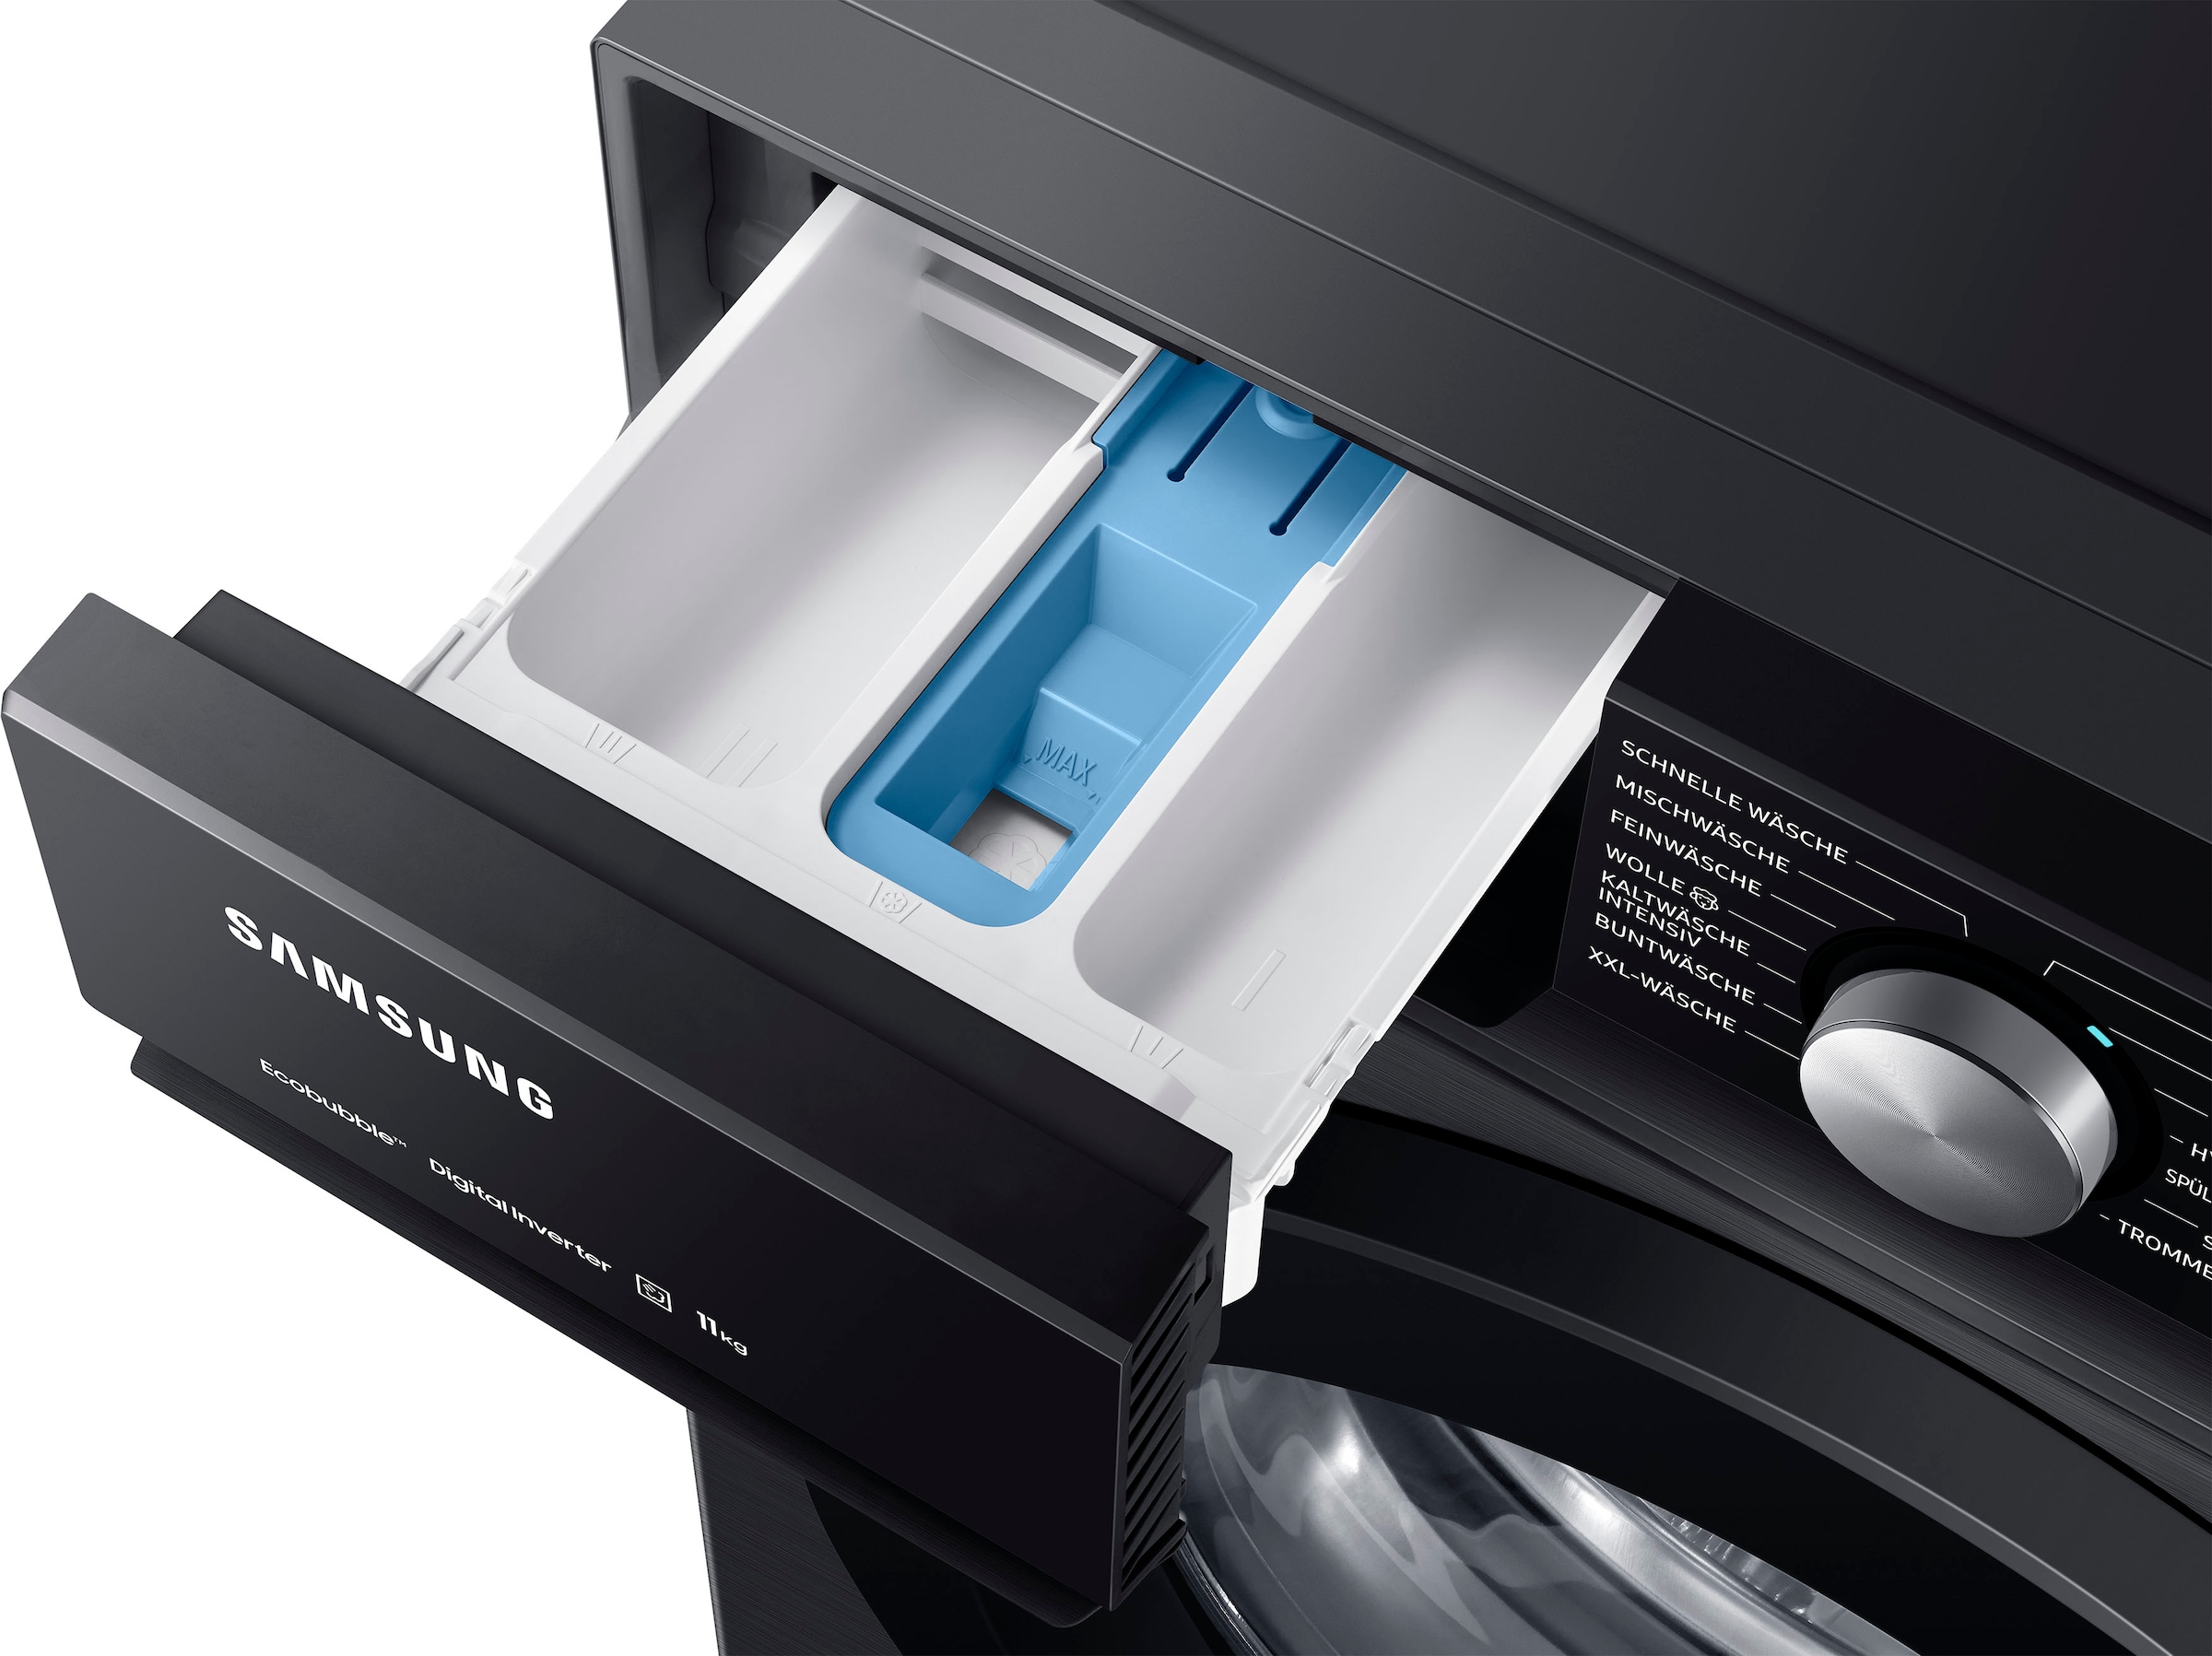 Samsung Waschmaschine »WW11BBA049AB«, WW11BBA049AB, 11 kg, 1400 U/min  kaufen bei OTTO